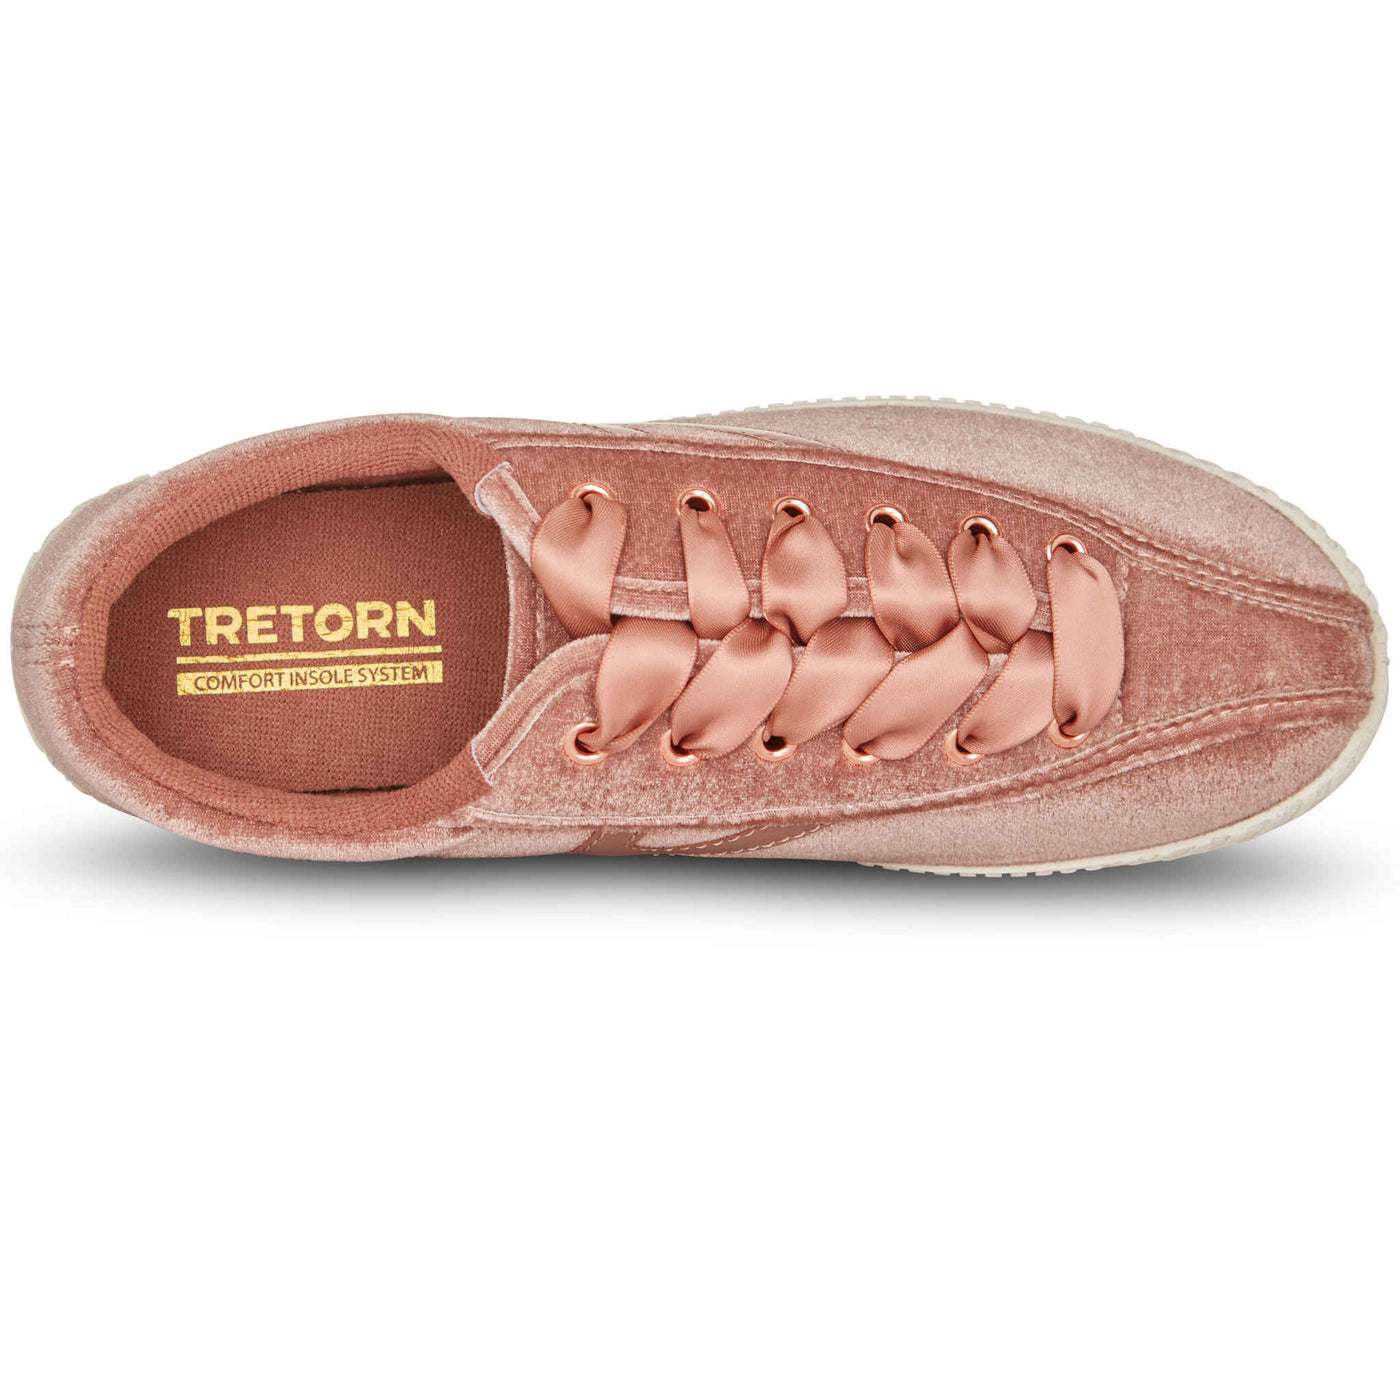 Tretorn Women's Sneakers Nylite Velvet Blush